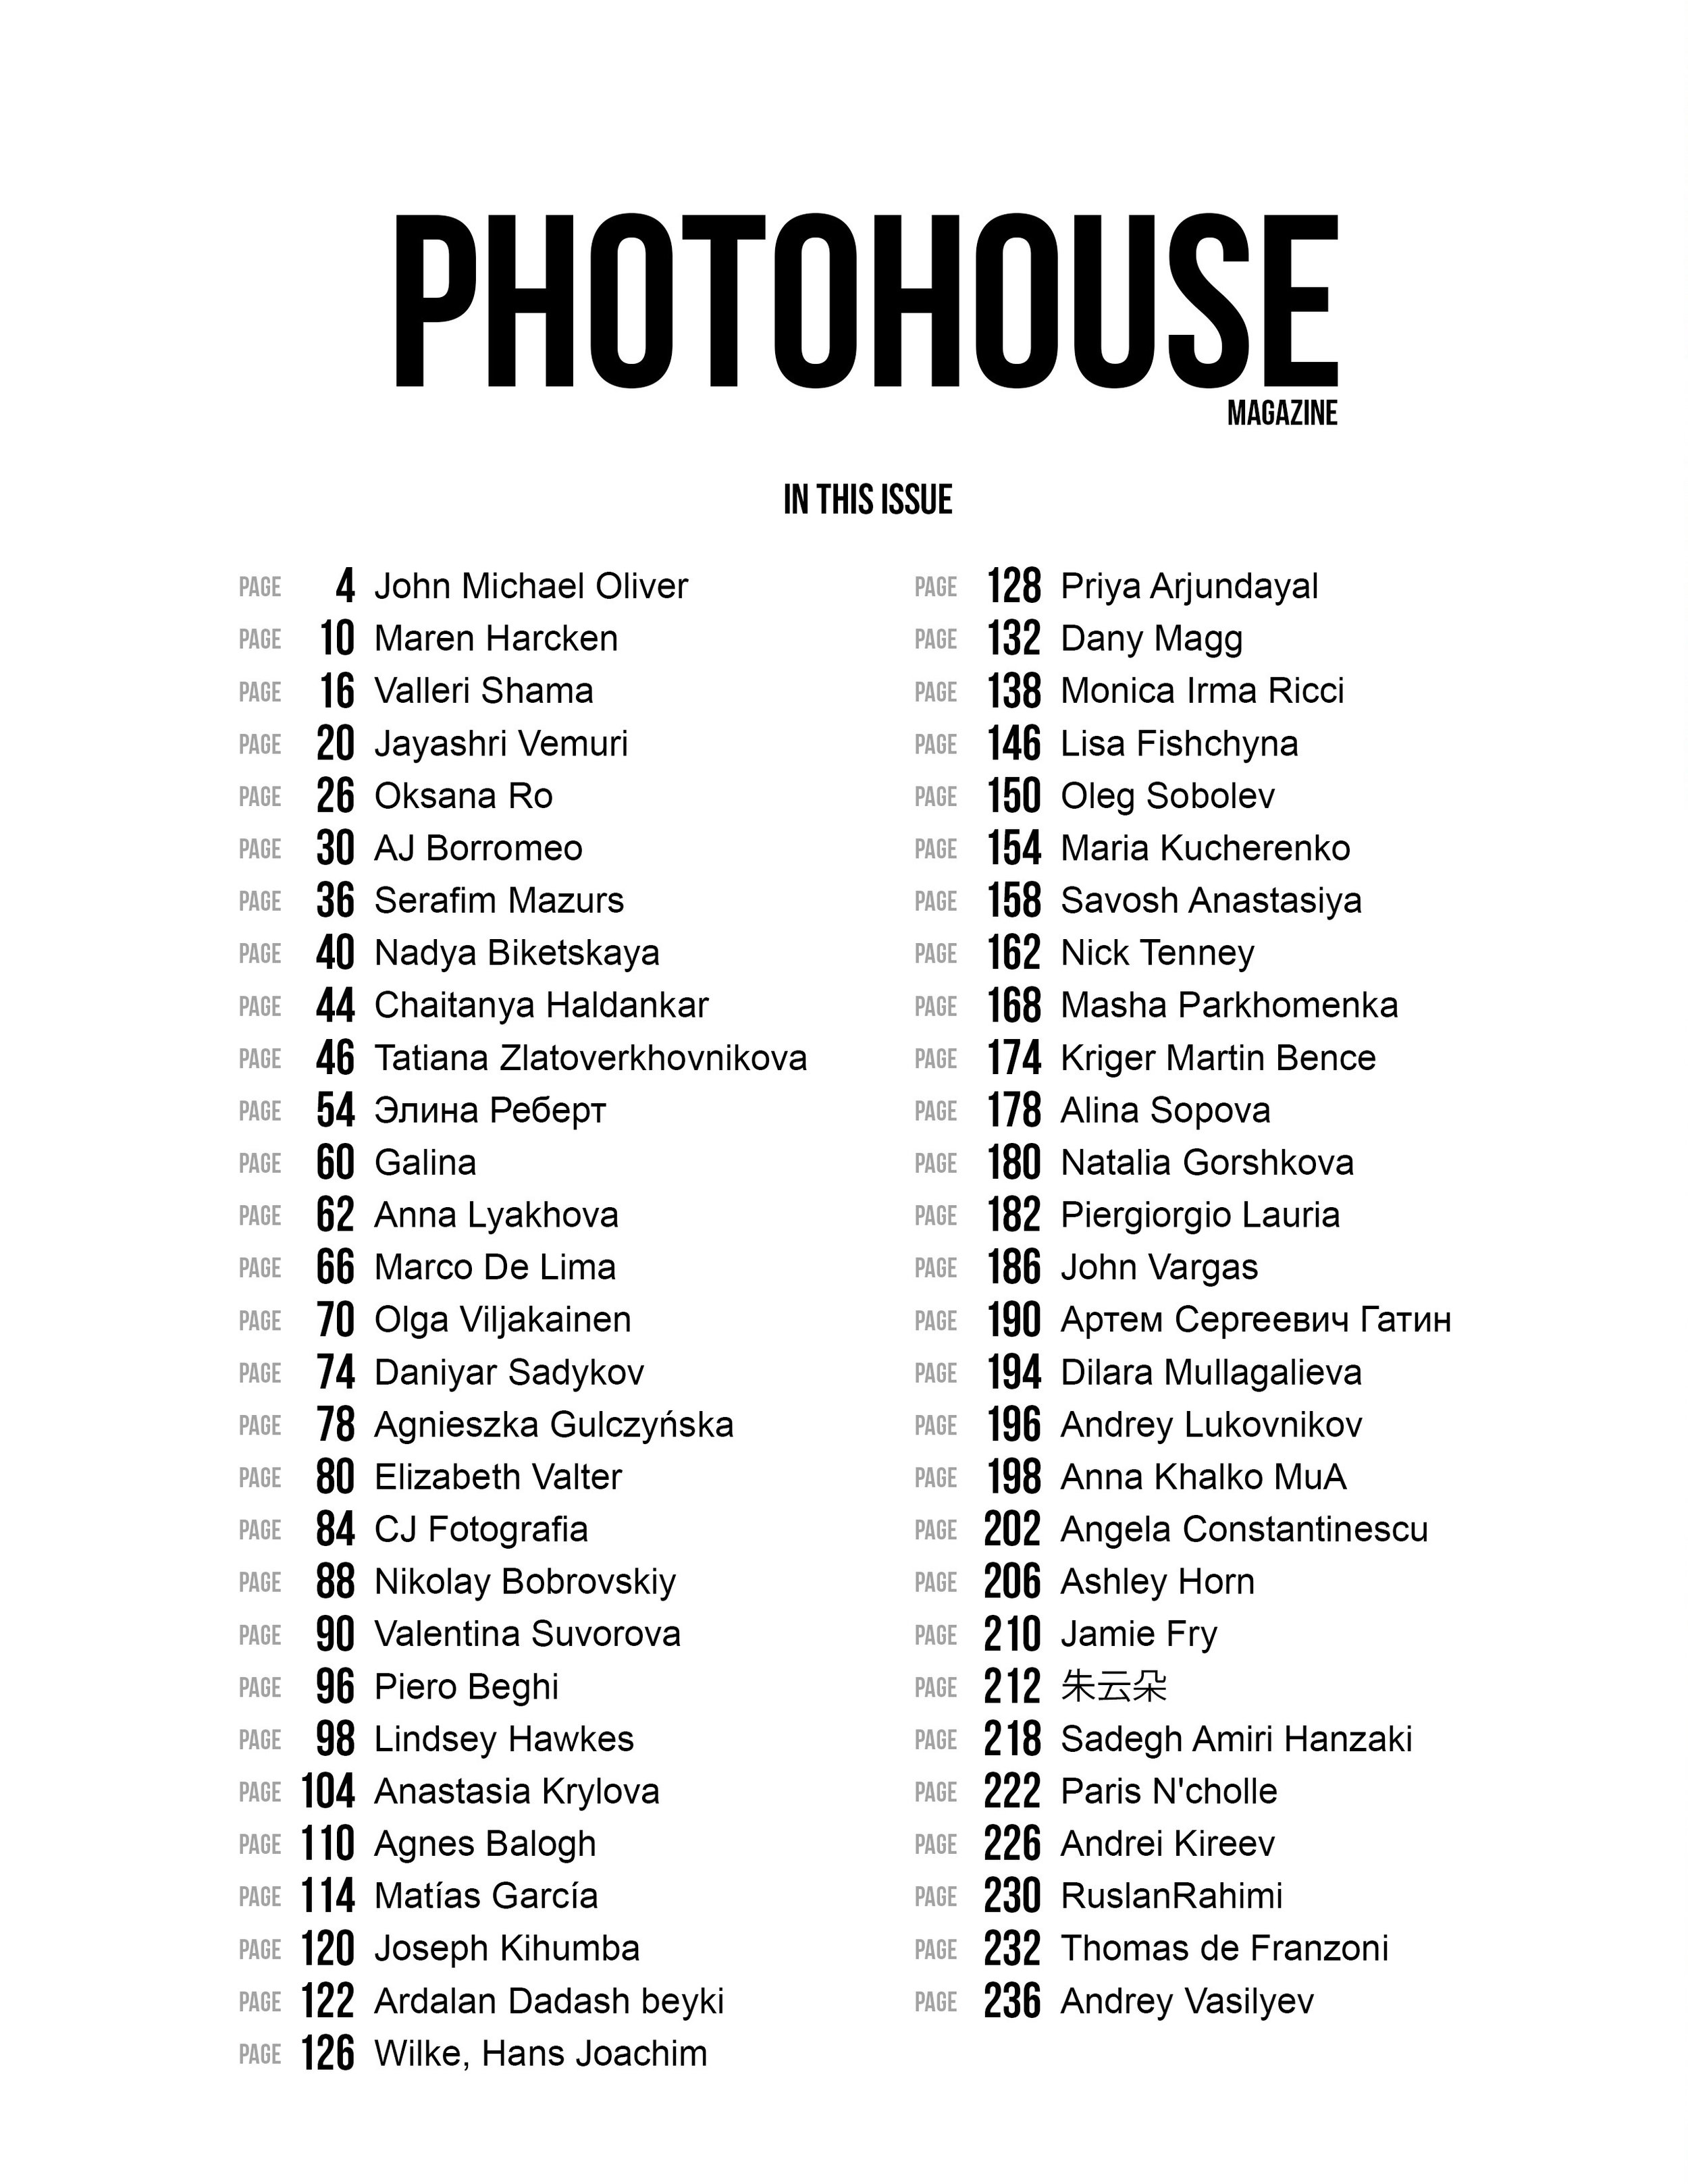 Photohouse_Magazine_Issue_7_page_2.jpg